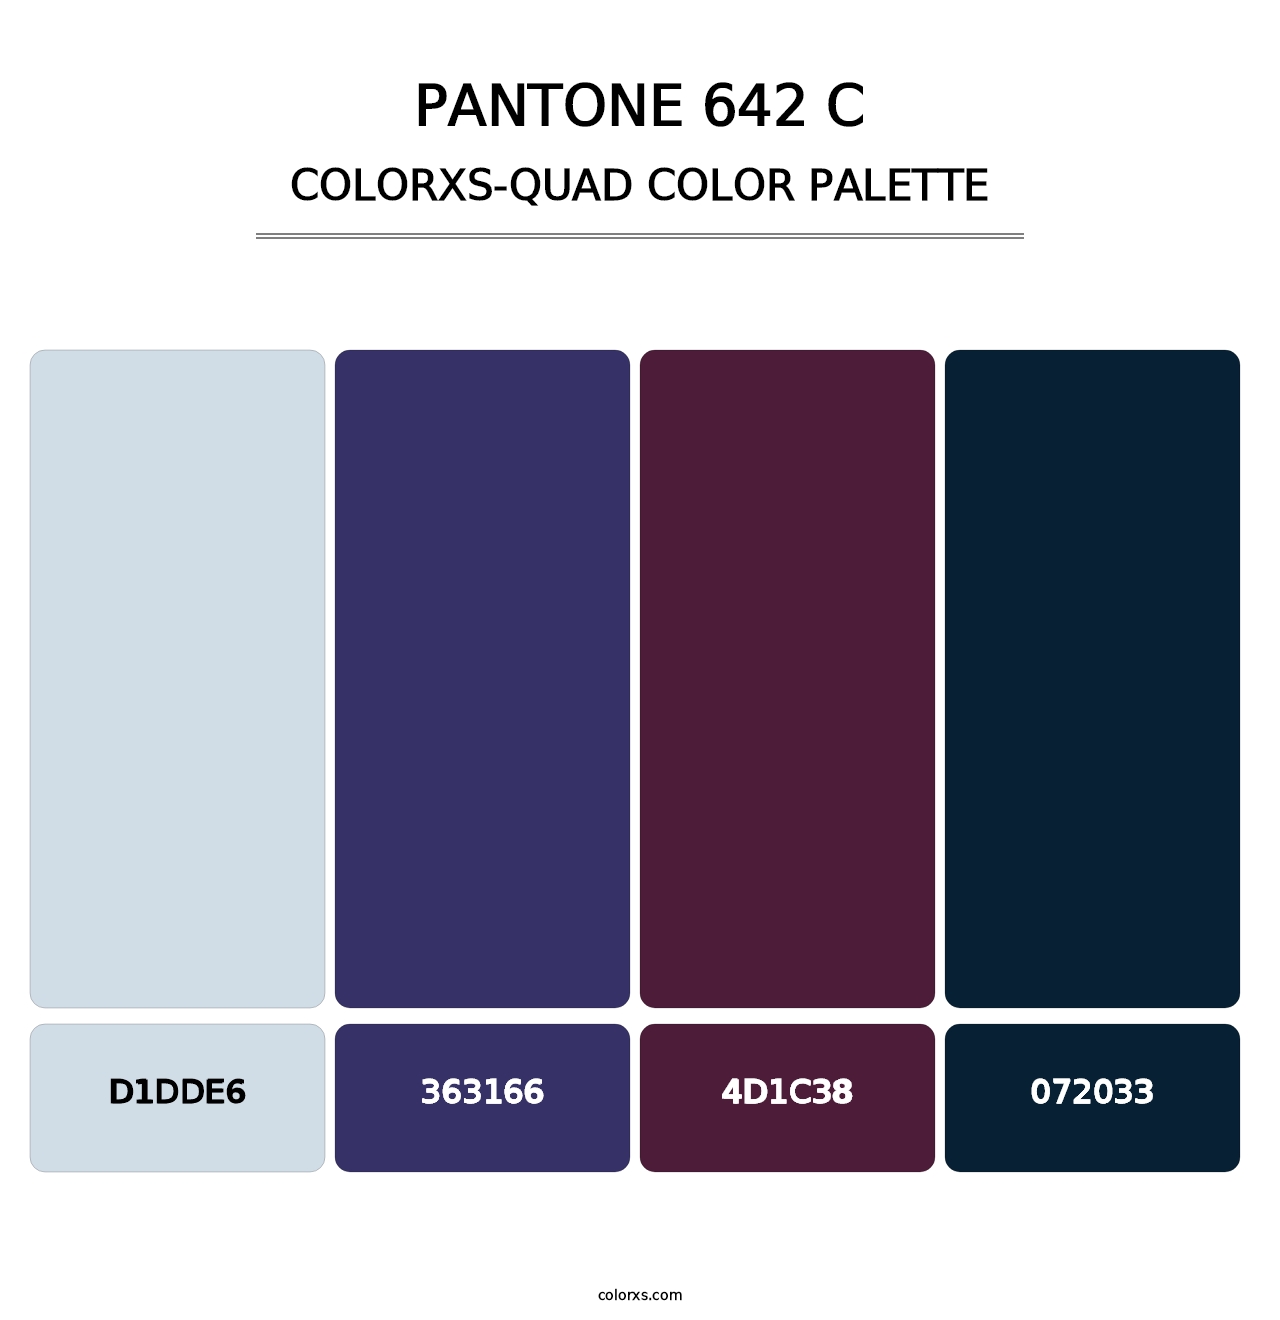 PANTONE 642 C - Colorxs Quad Palette